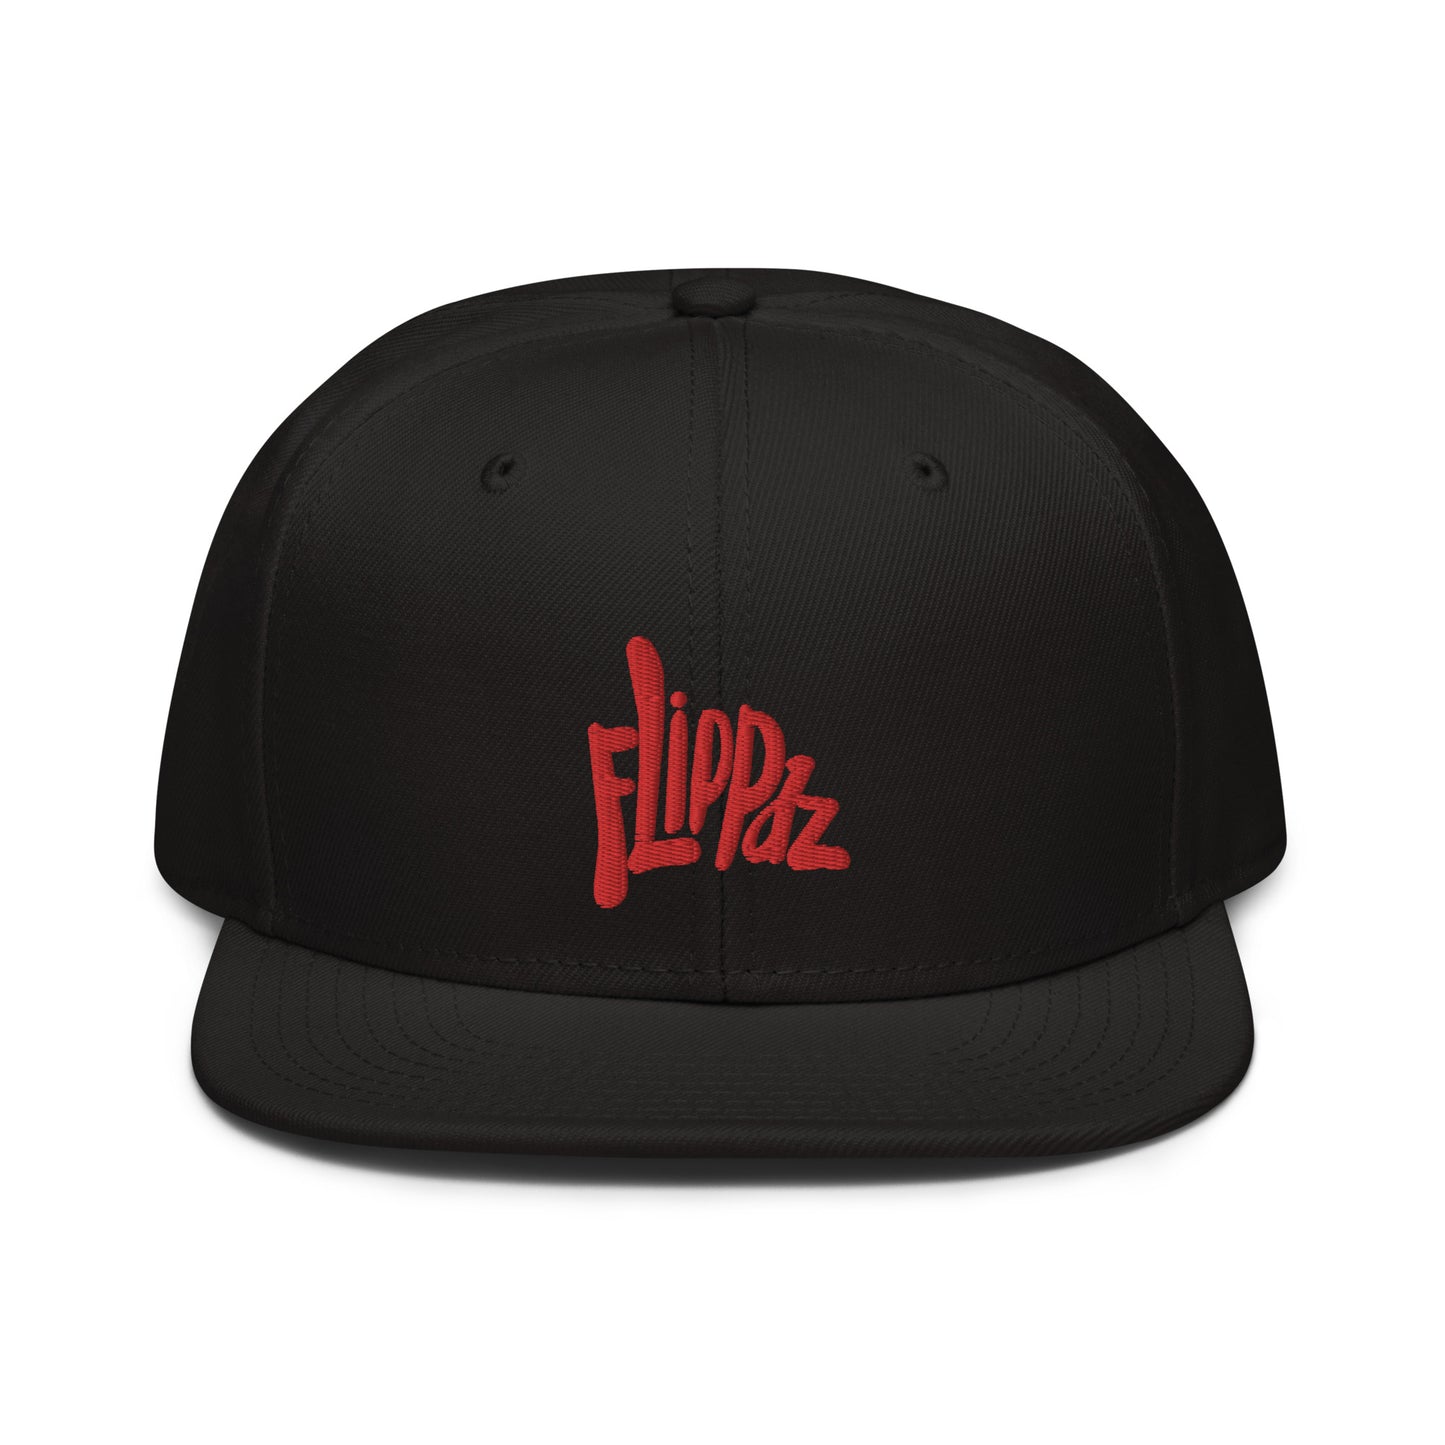 Flippaz Snapback Hat